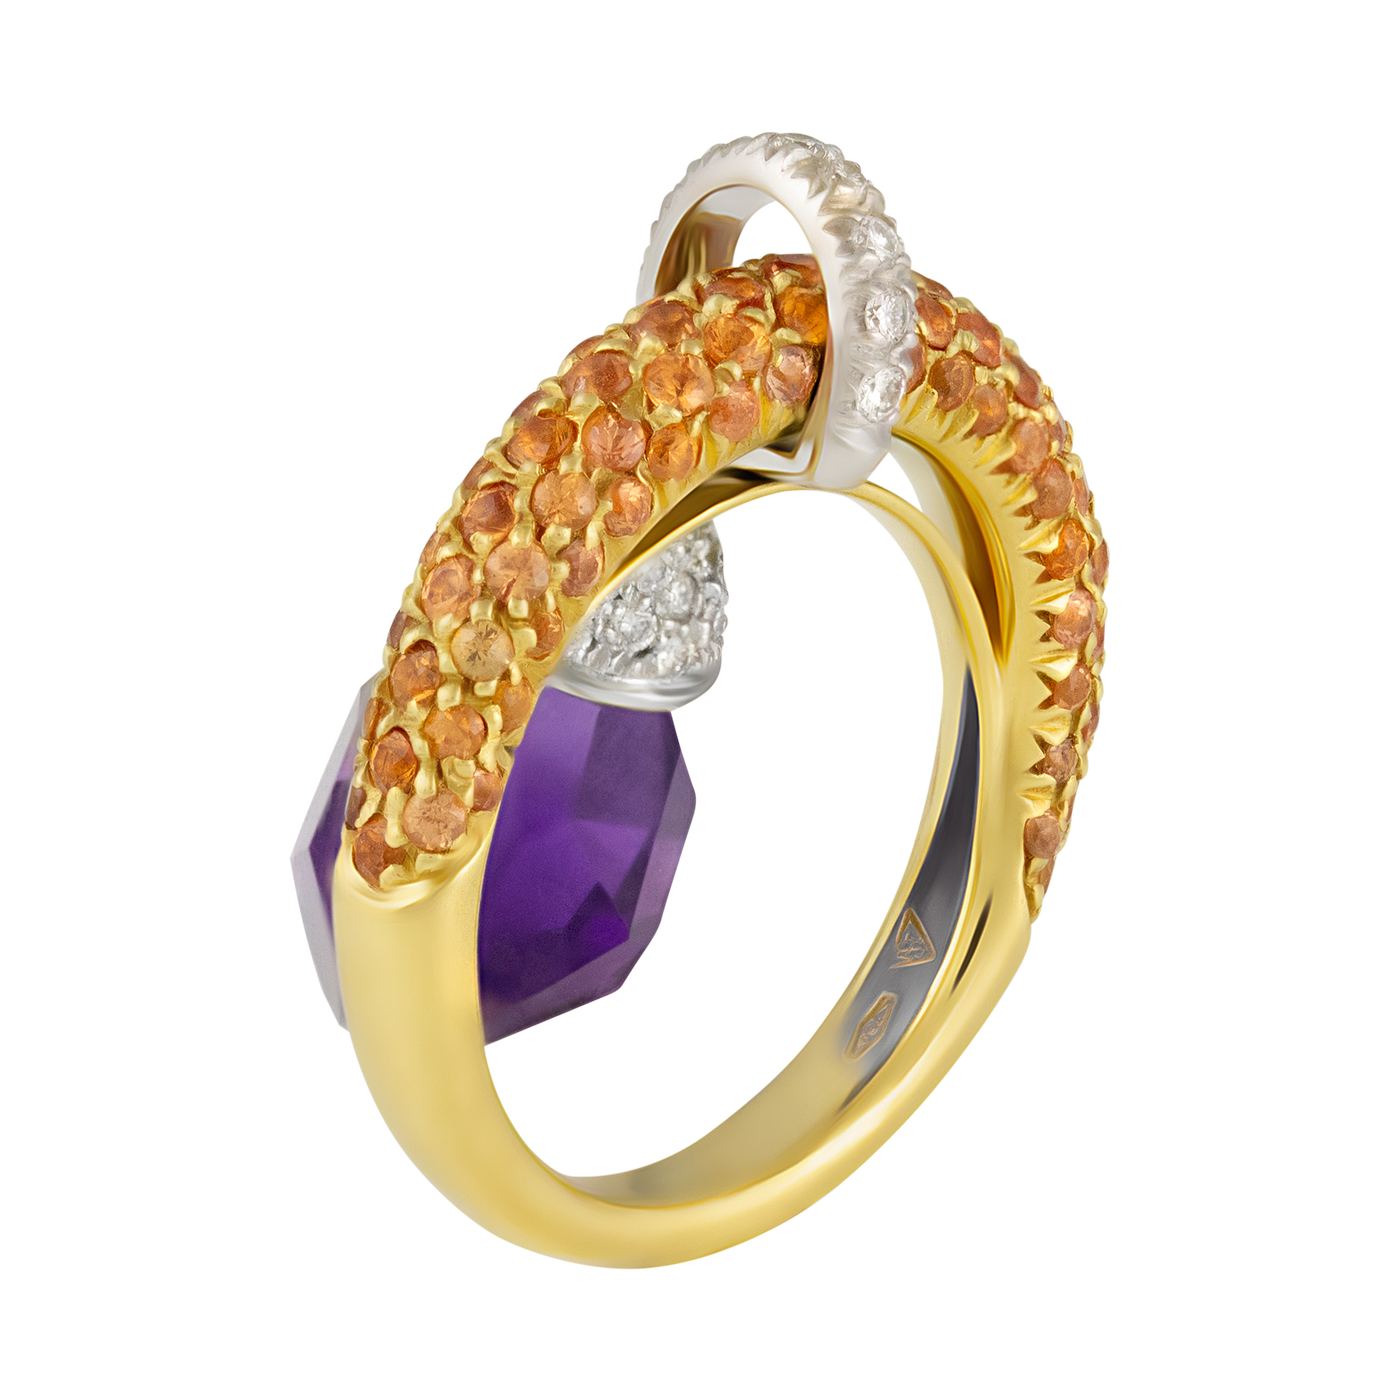 Stefan Hafner 18K Yellow Gold Diamond & Sapphire Ring